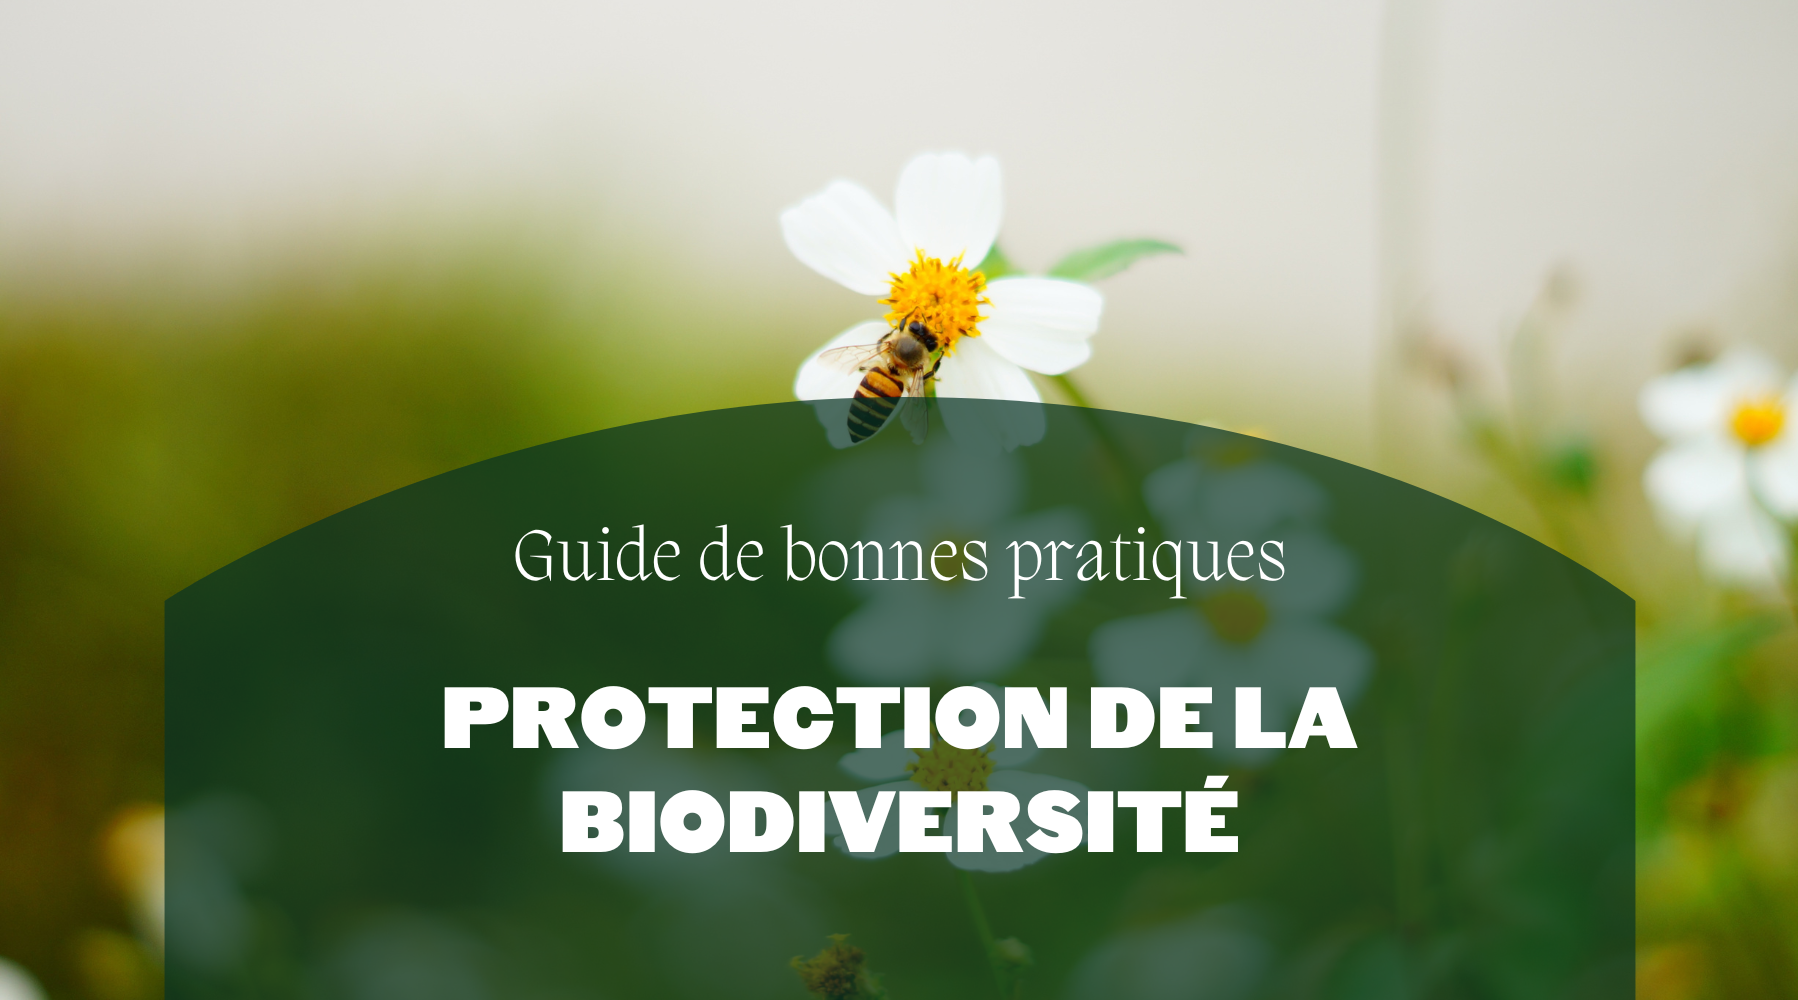 Guide de bonnes pratiques | Protection de la biodiversité